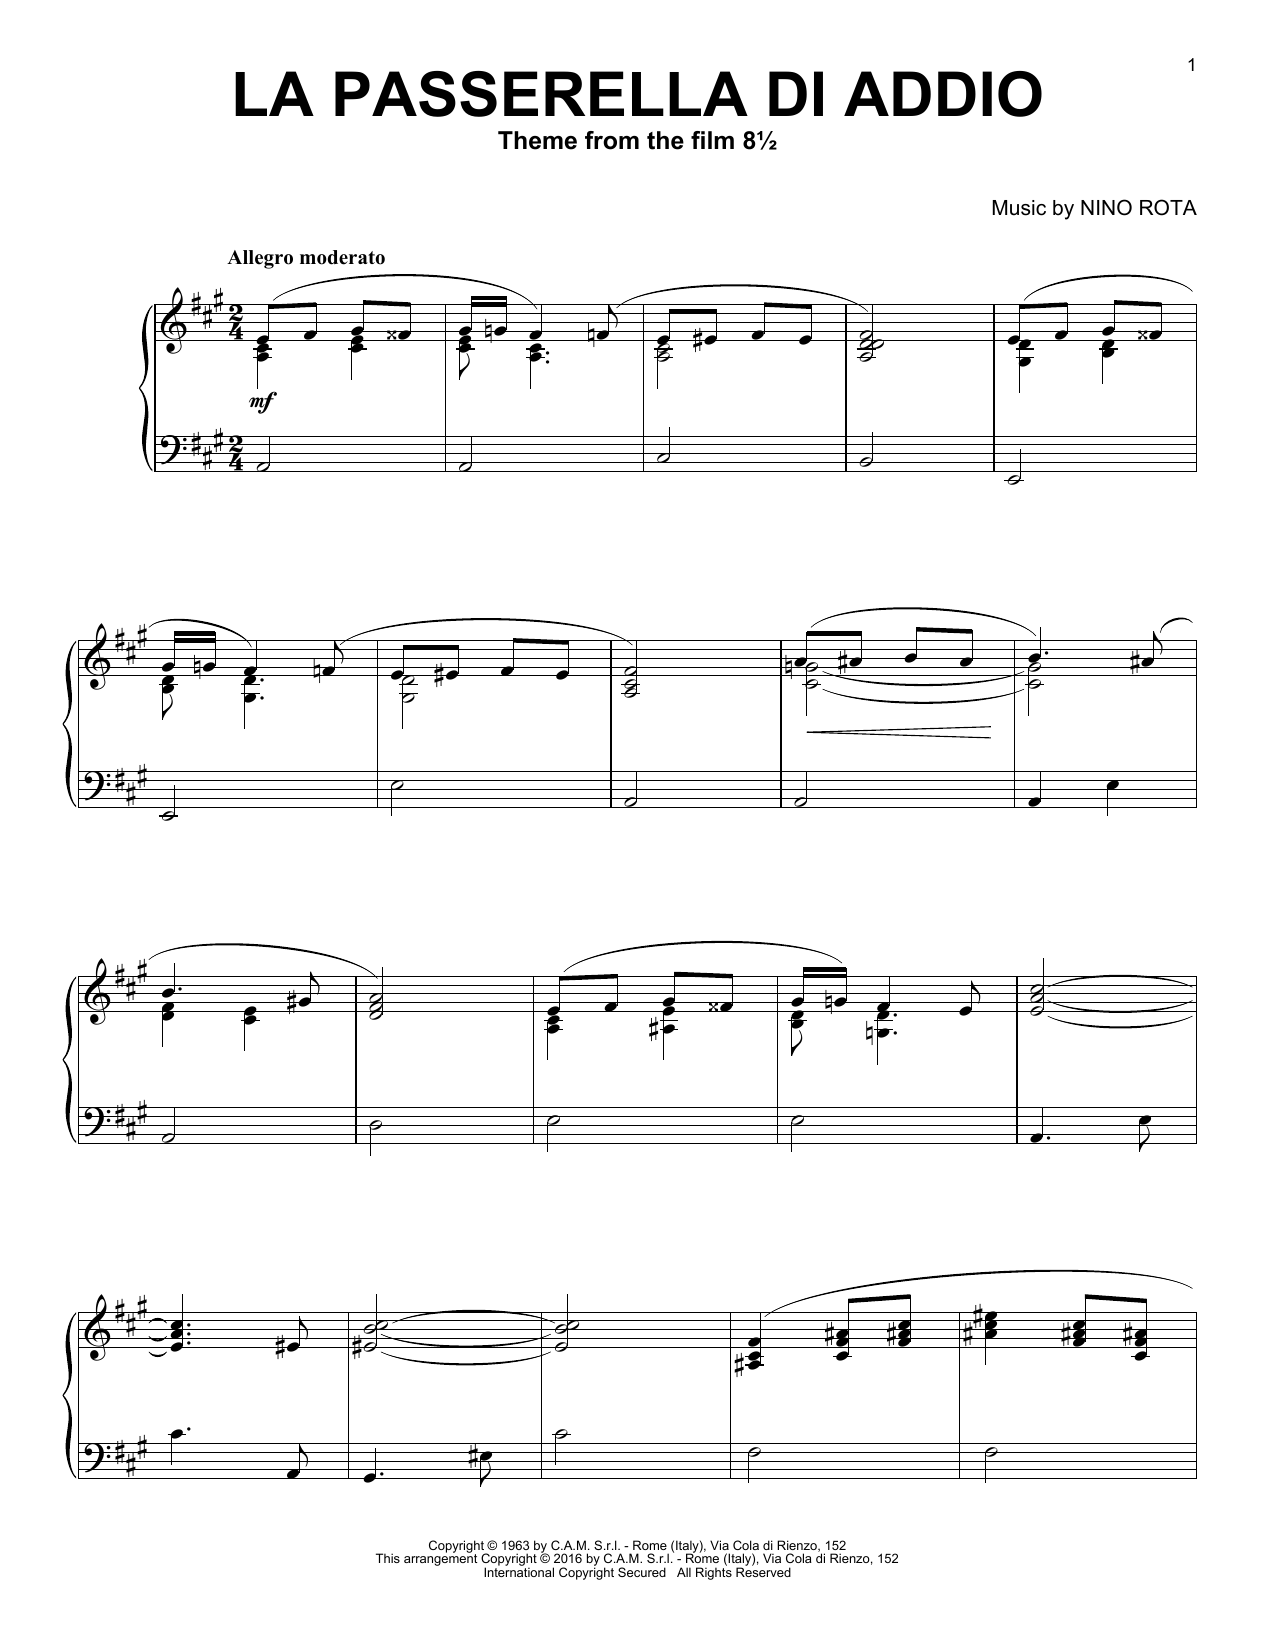 Download Nino Rota La Passerella Di Addio Sheet Music and learn how to play Piano PDF digital score in minutes